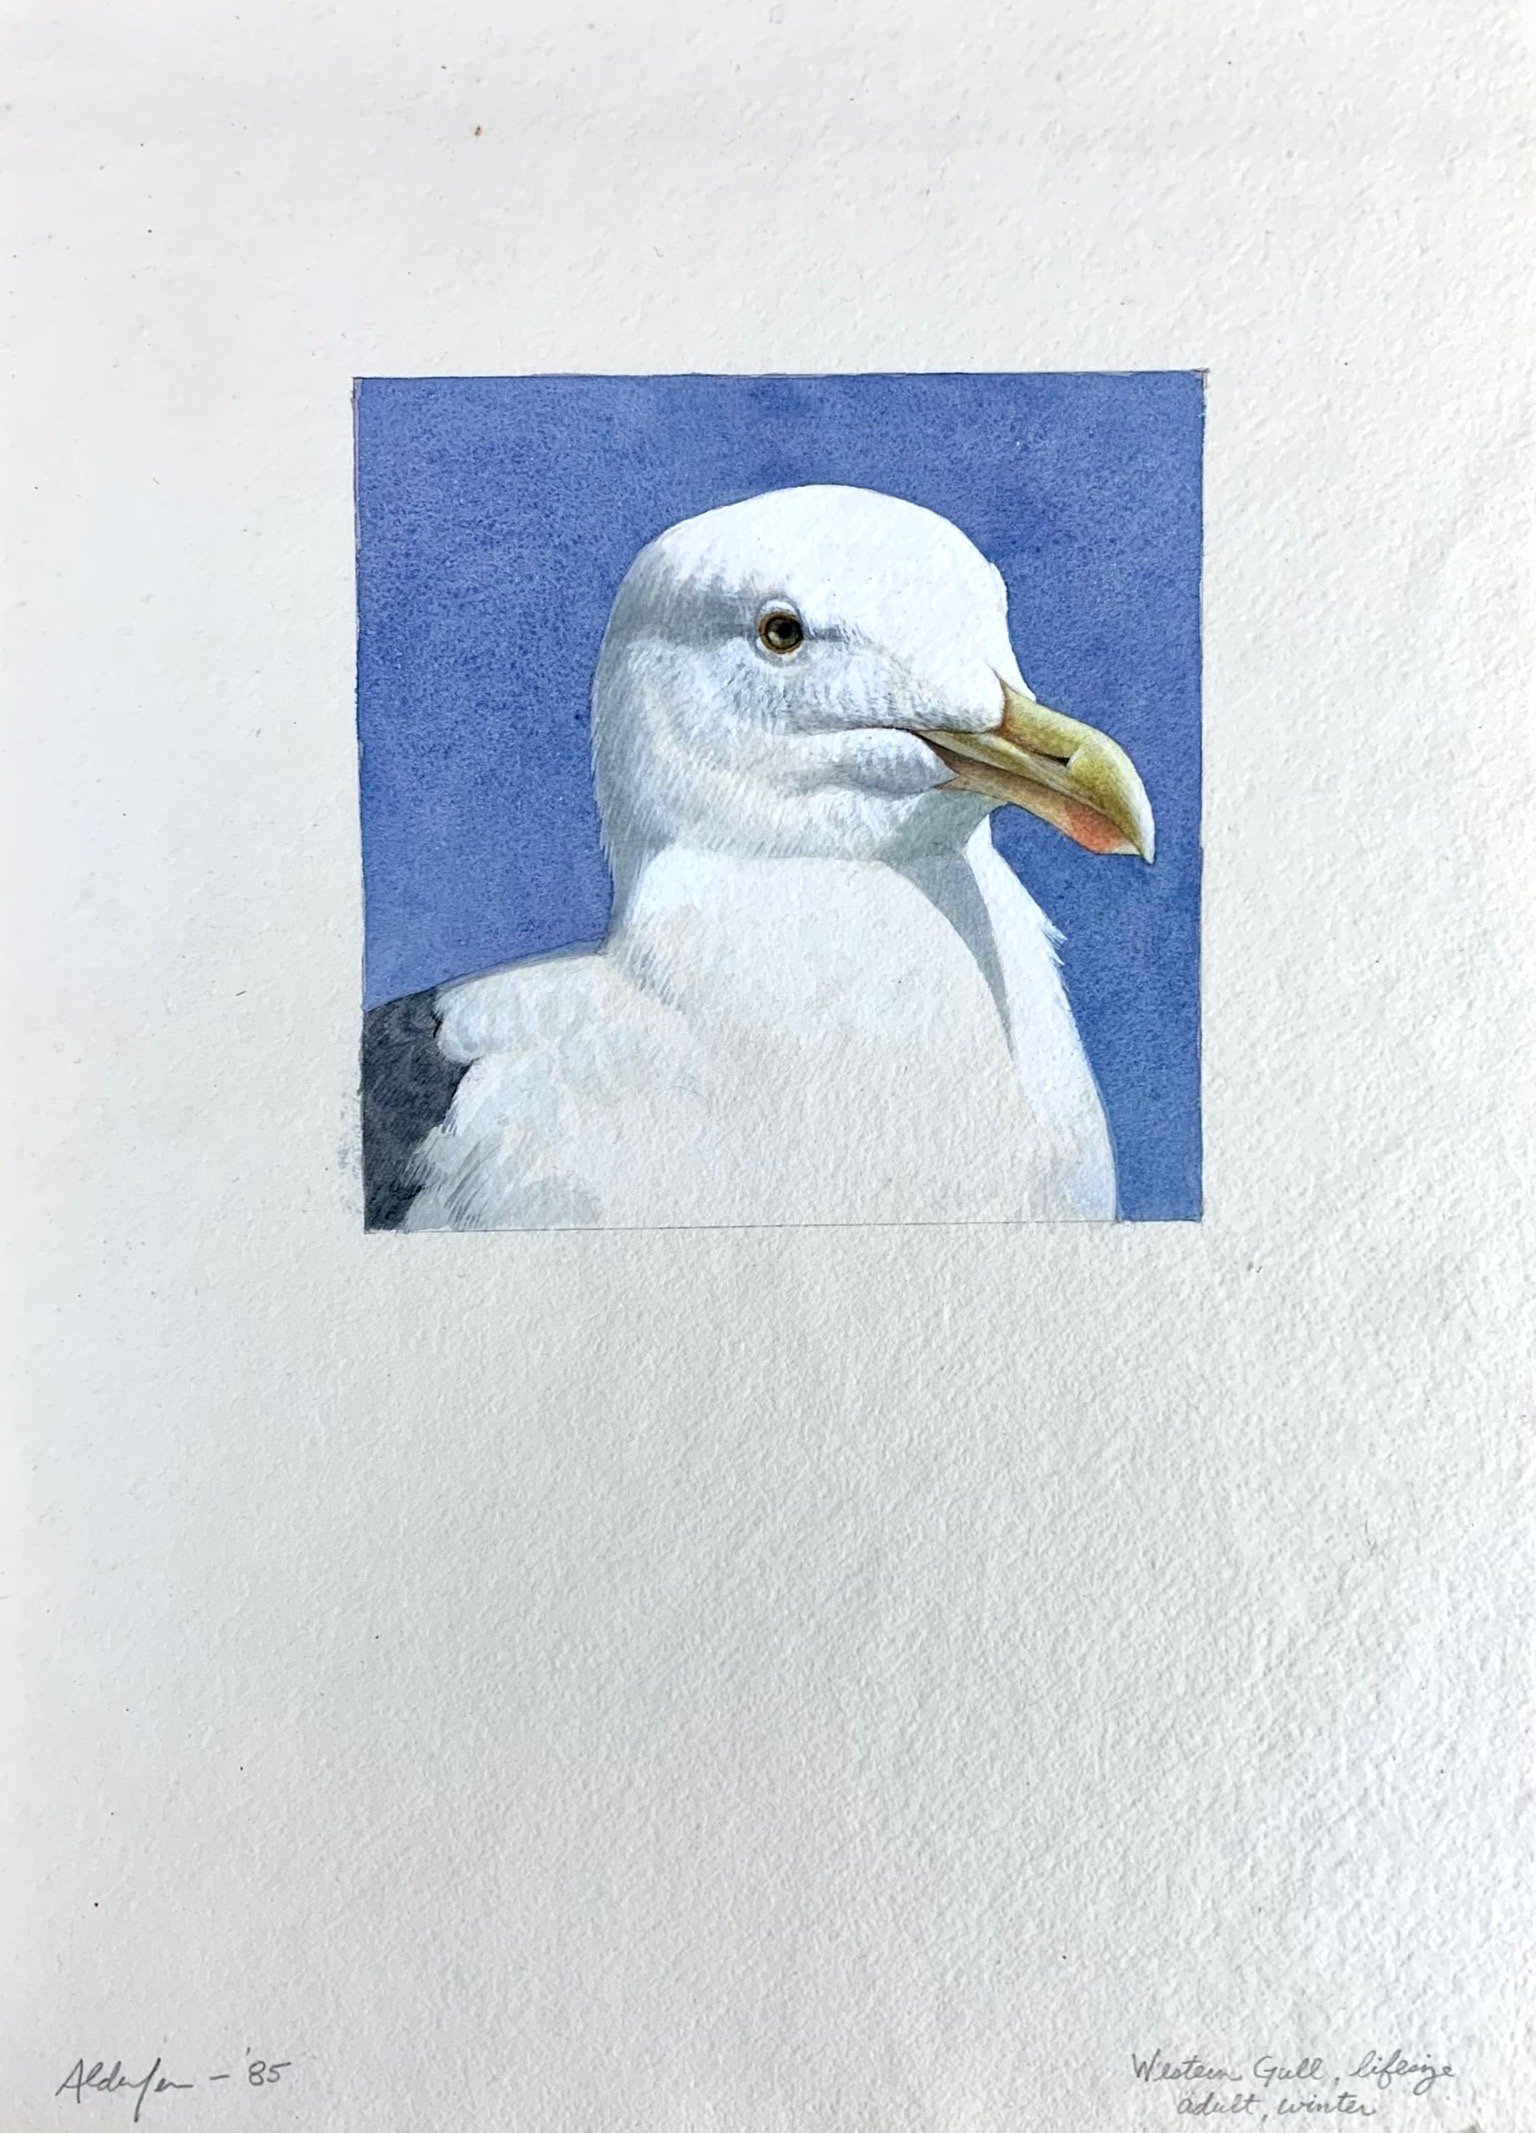 Western Gull, Winter Adult #1, 1985  (Copy)